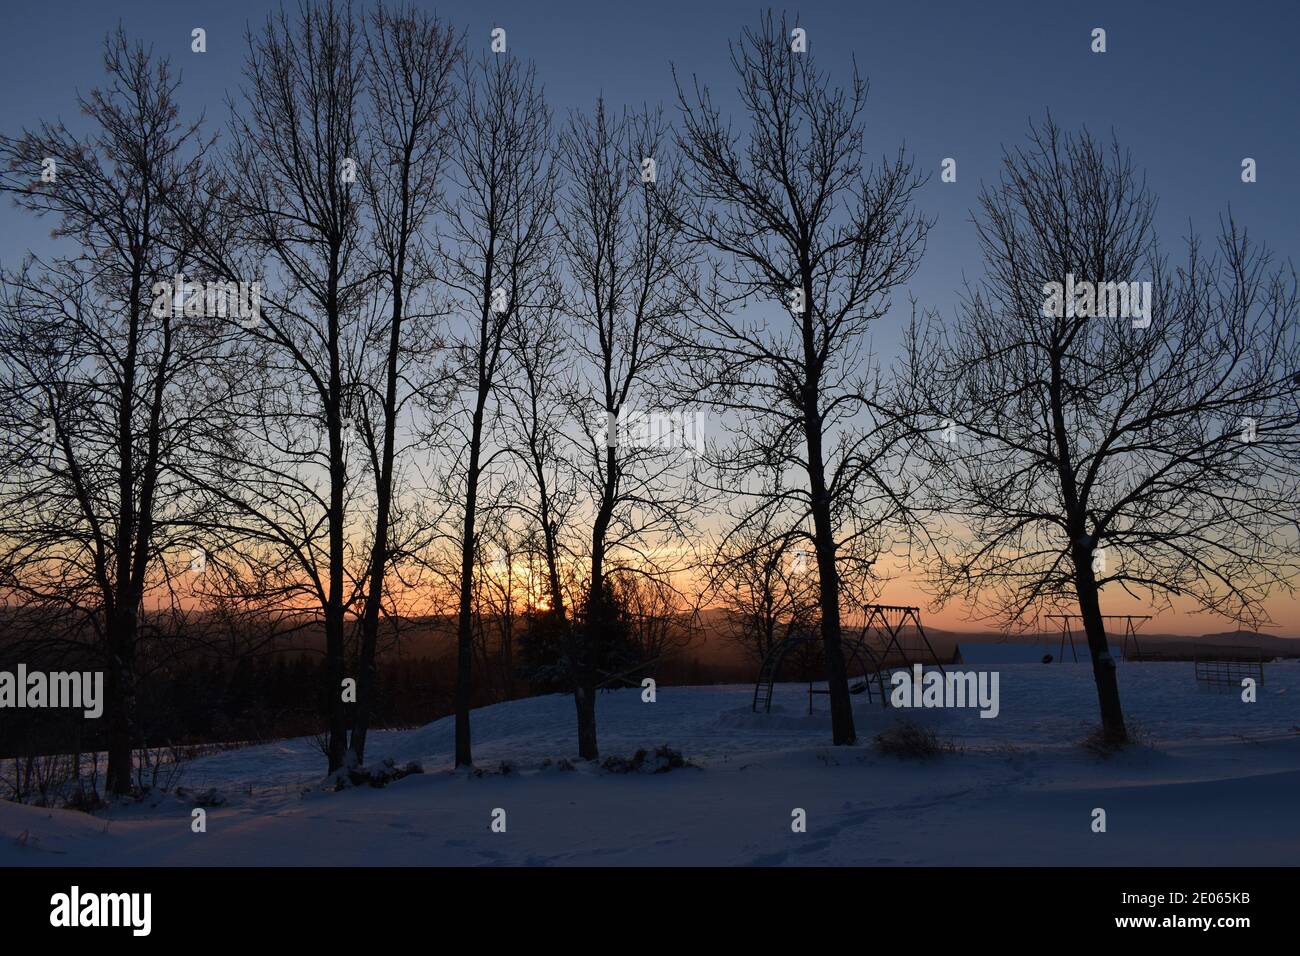 UN lever de Soleil un matin d'hiver, Sainte-Apolline, Québec Stockfoto